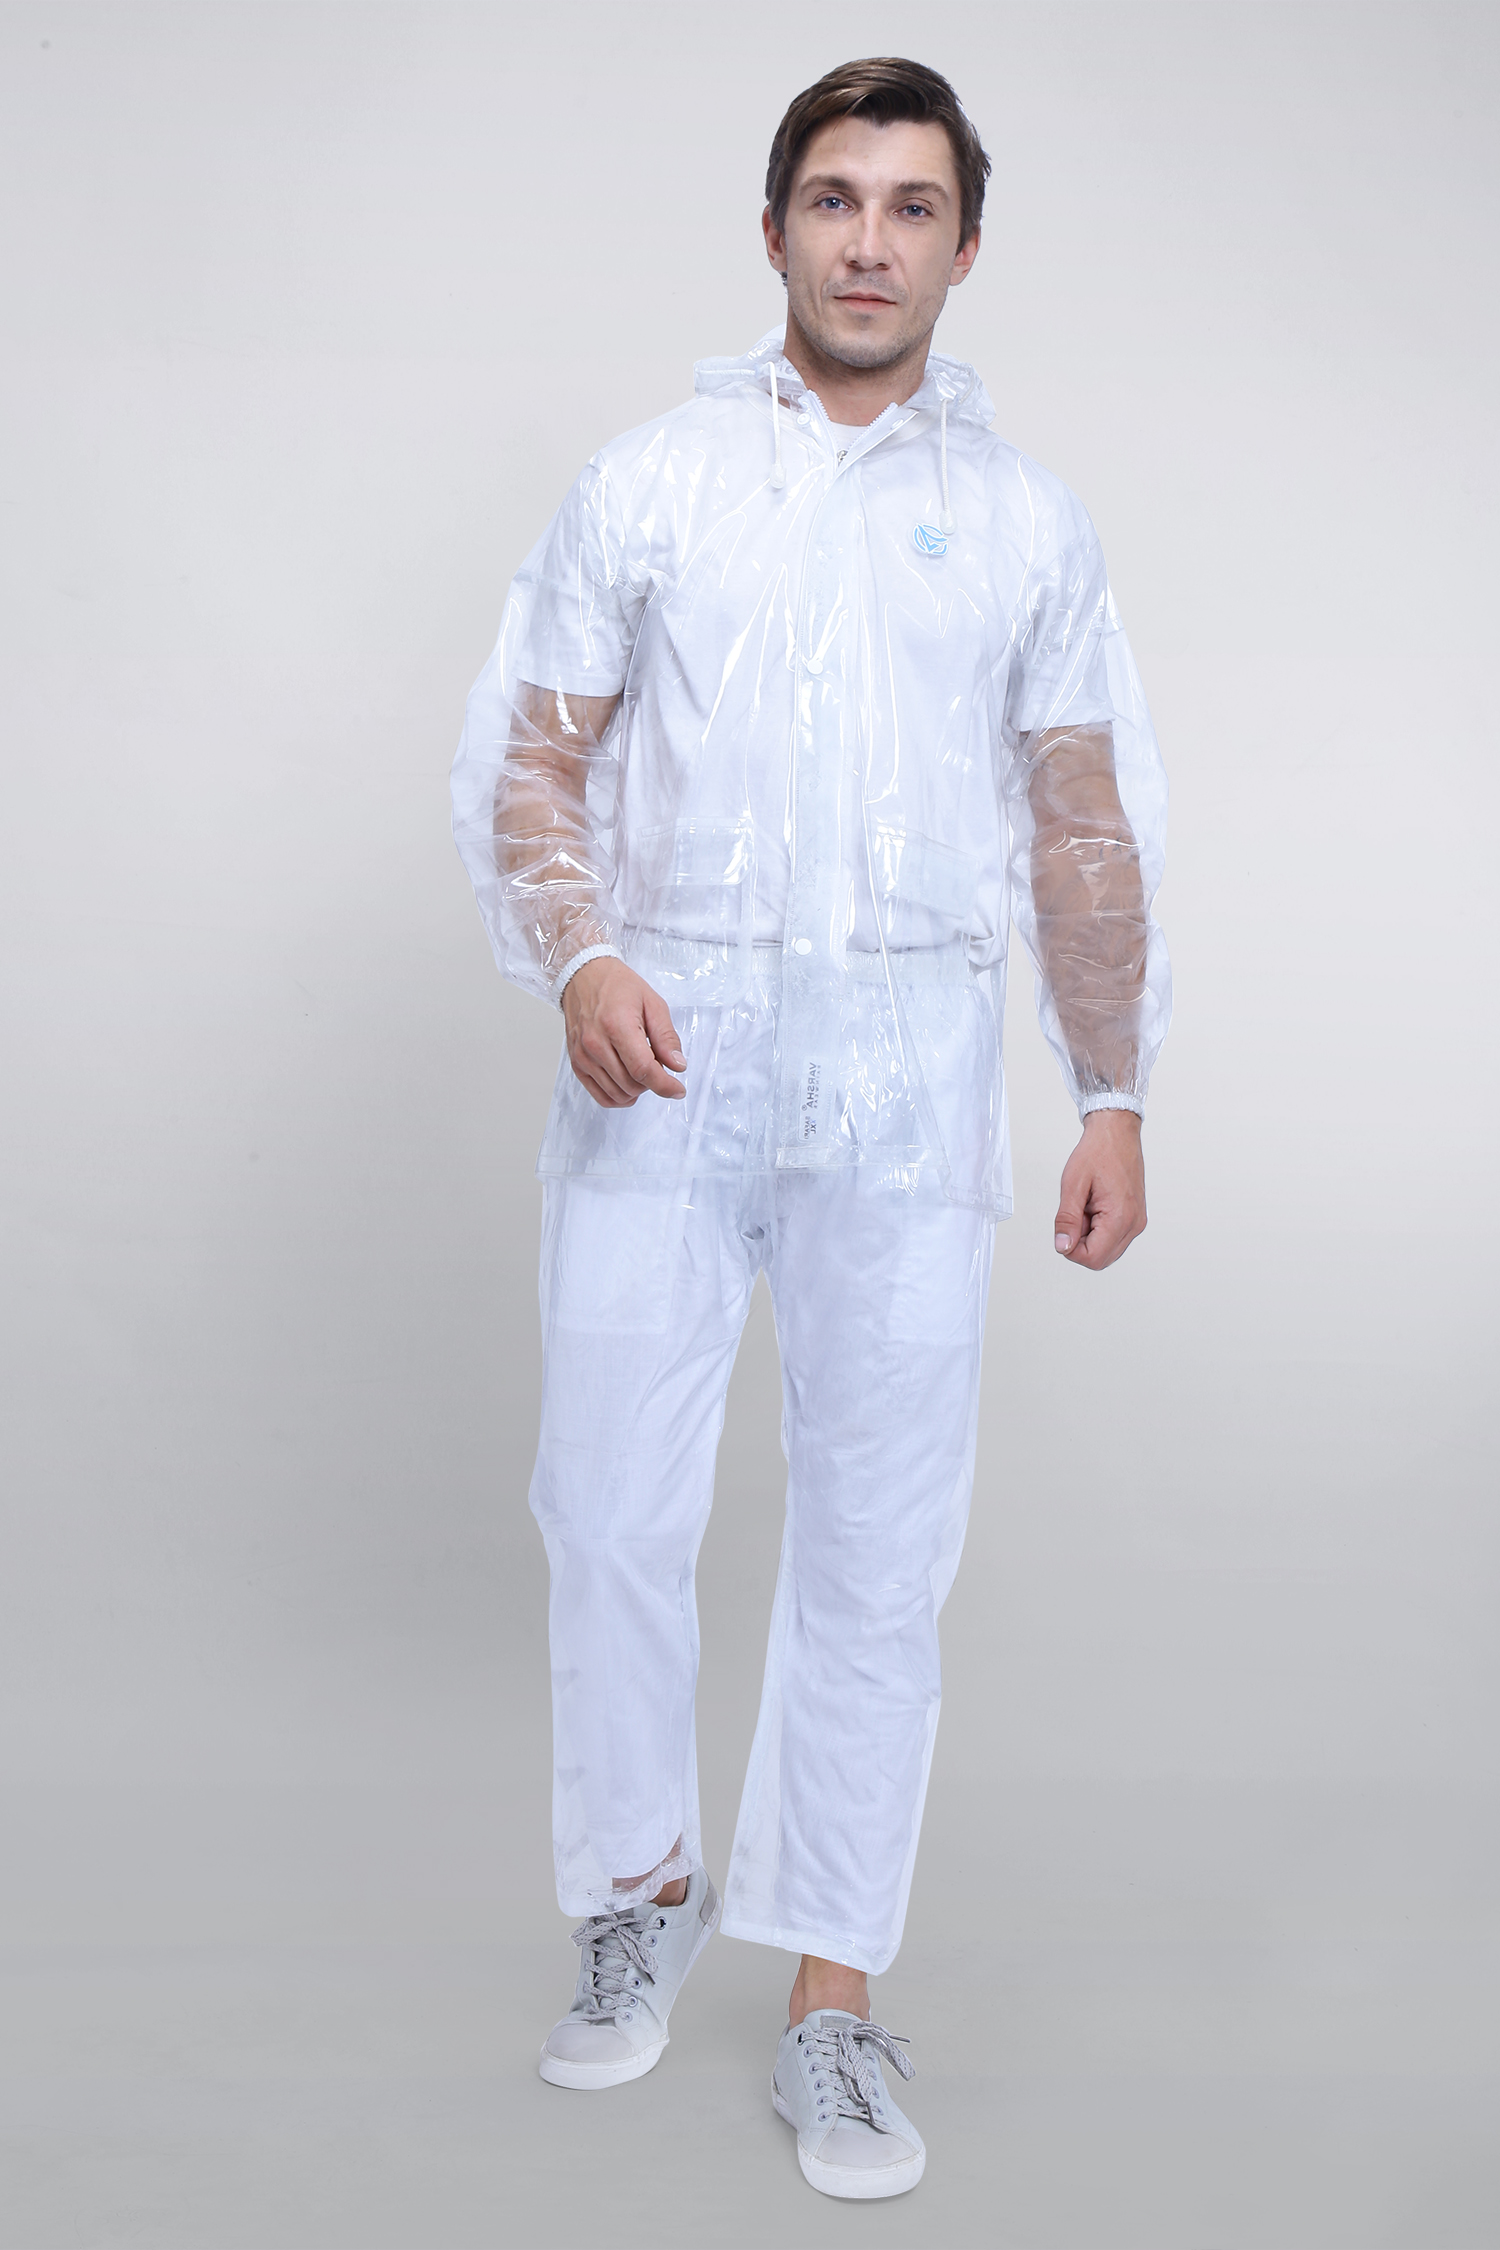 Unisex Transparent Rain Suit - Aqua NX